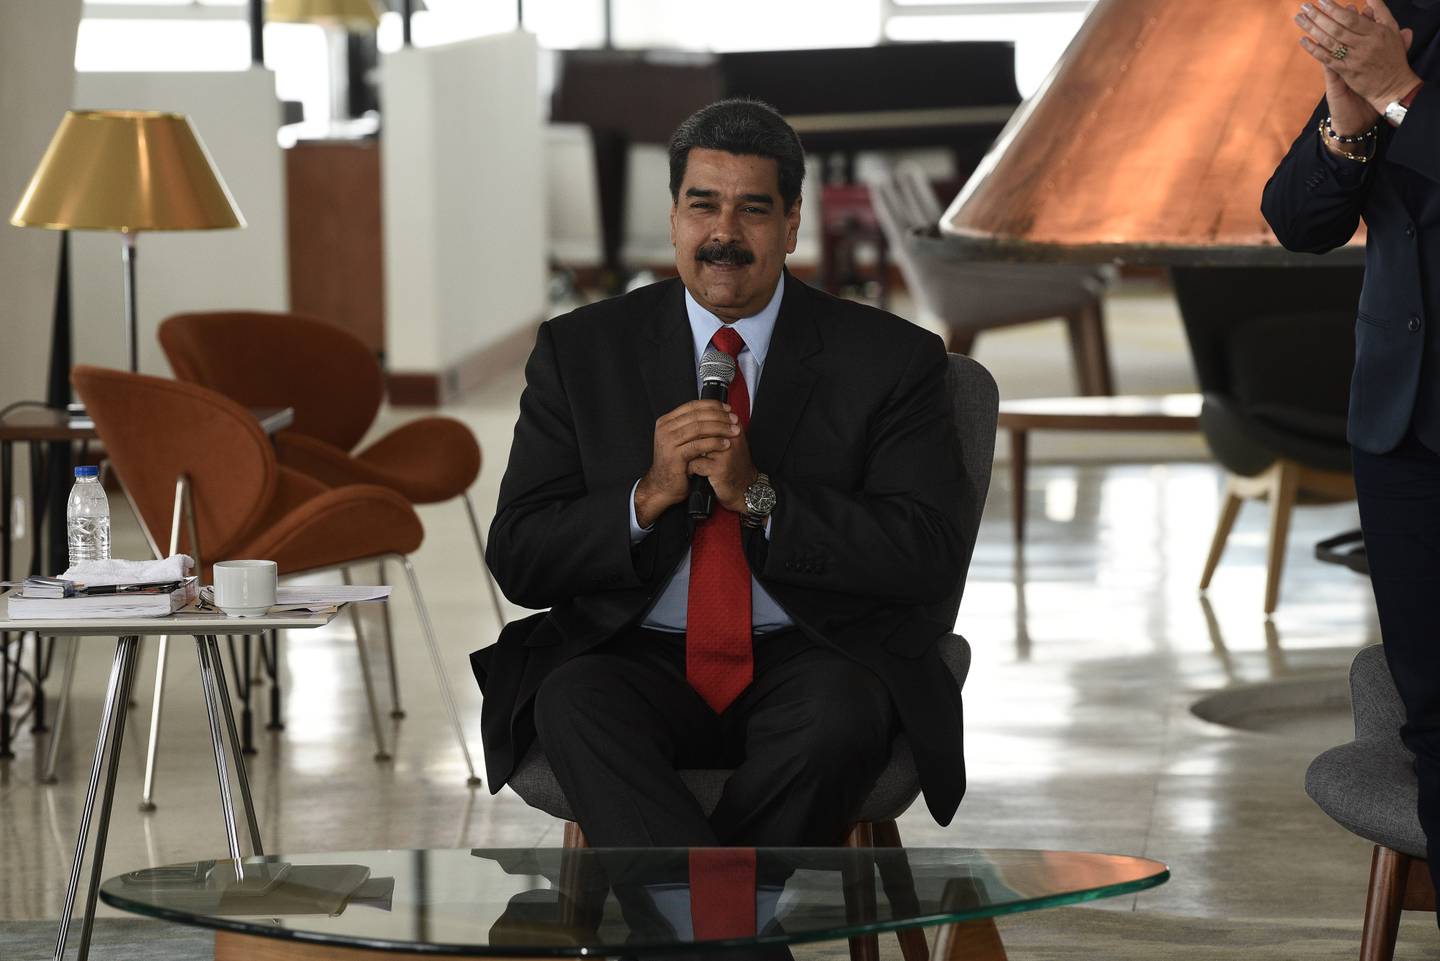 El presidente Maduro en el evento de reapertura del Hotel Humboldt, dentro del parque nacional en 2018.Fotógrafo: Carlos Becerra/Bloomberg